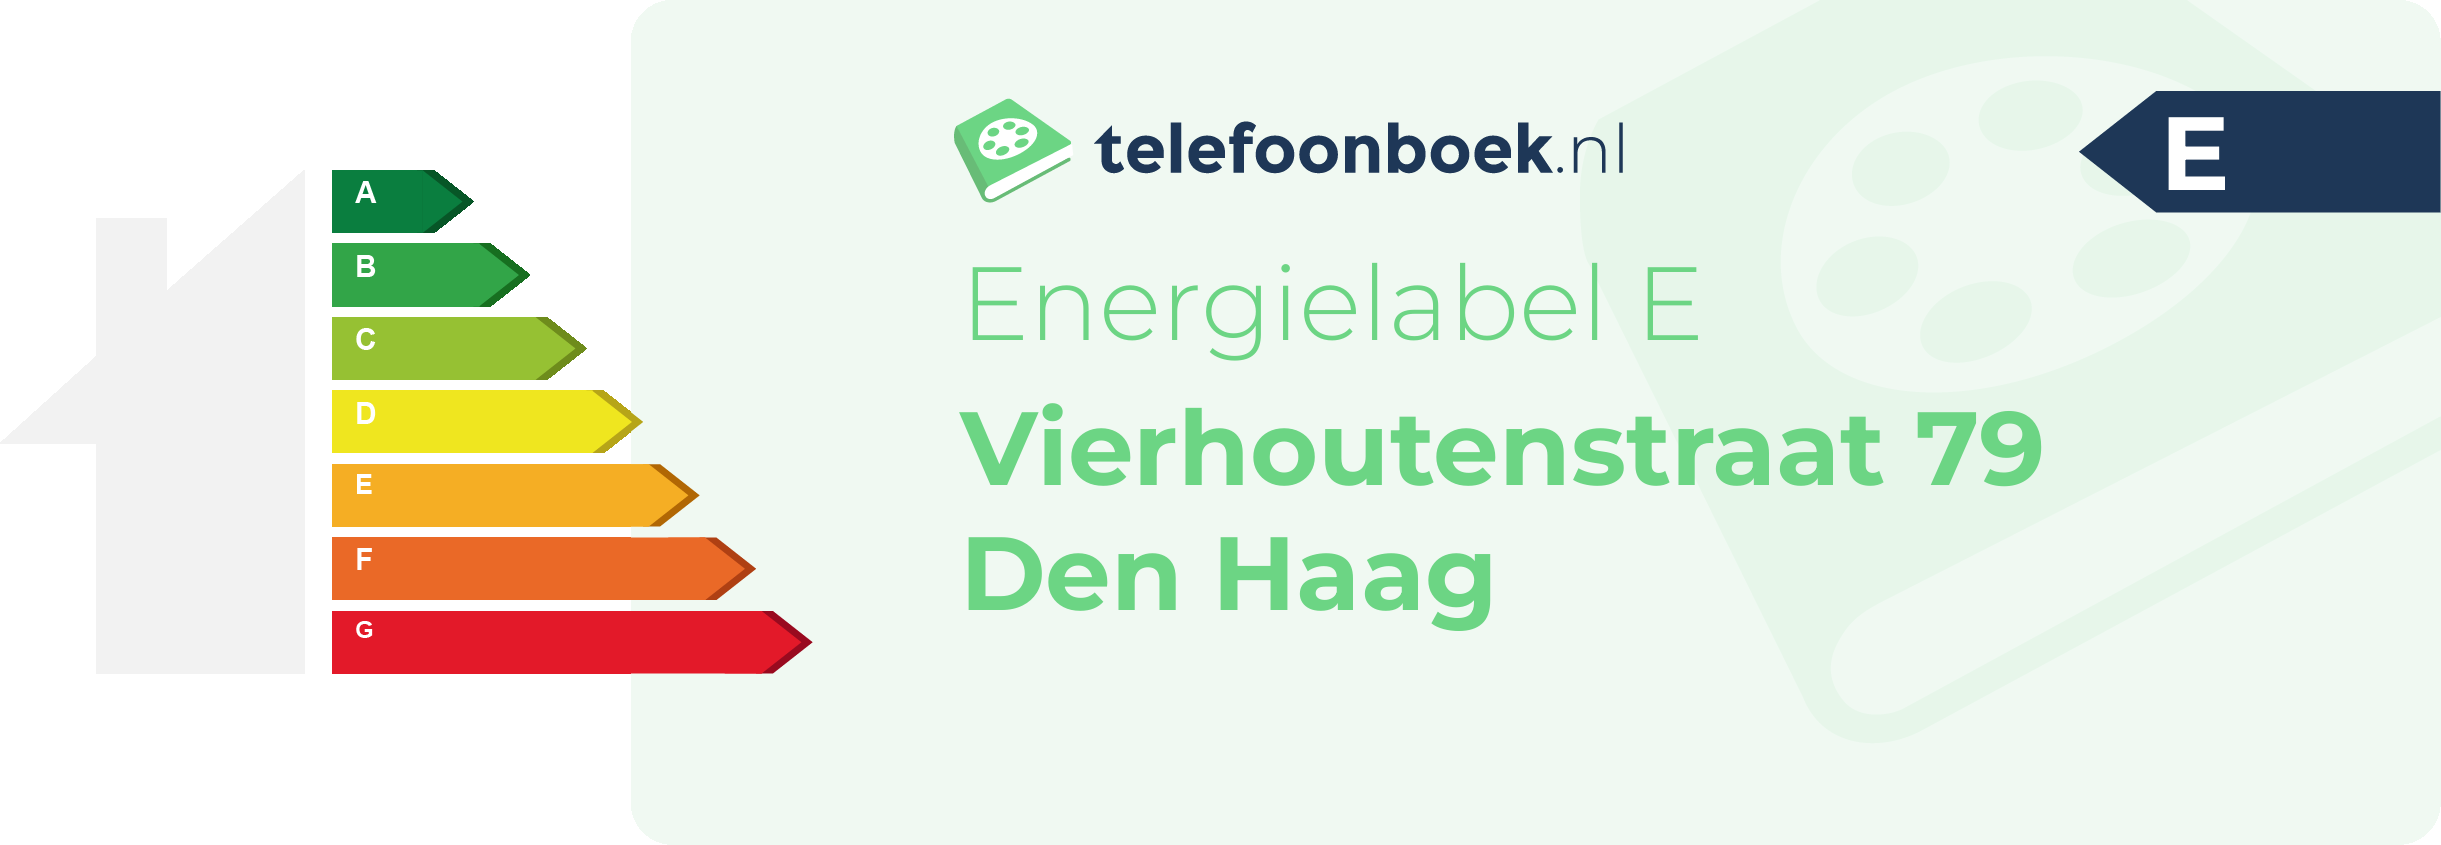 Energielabel Vierhoutenstraat 79 Den Haag